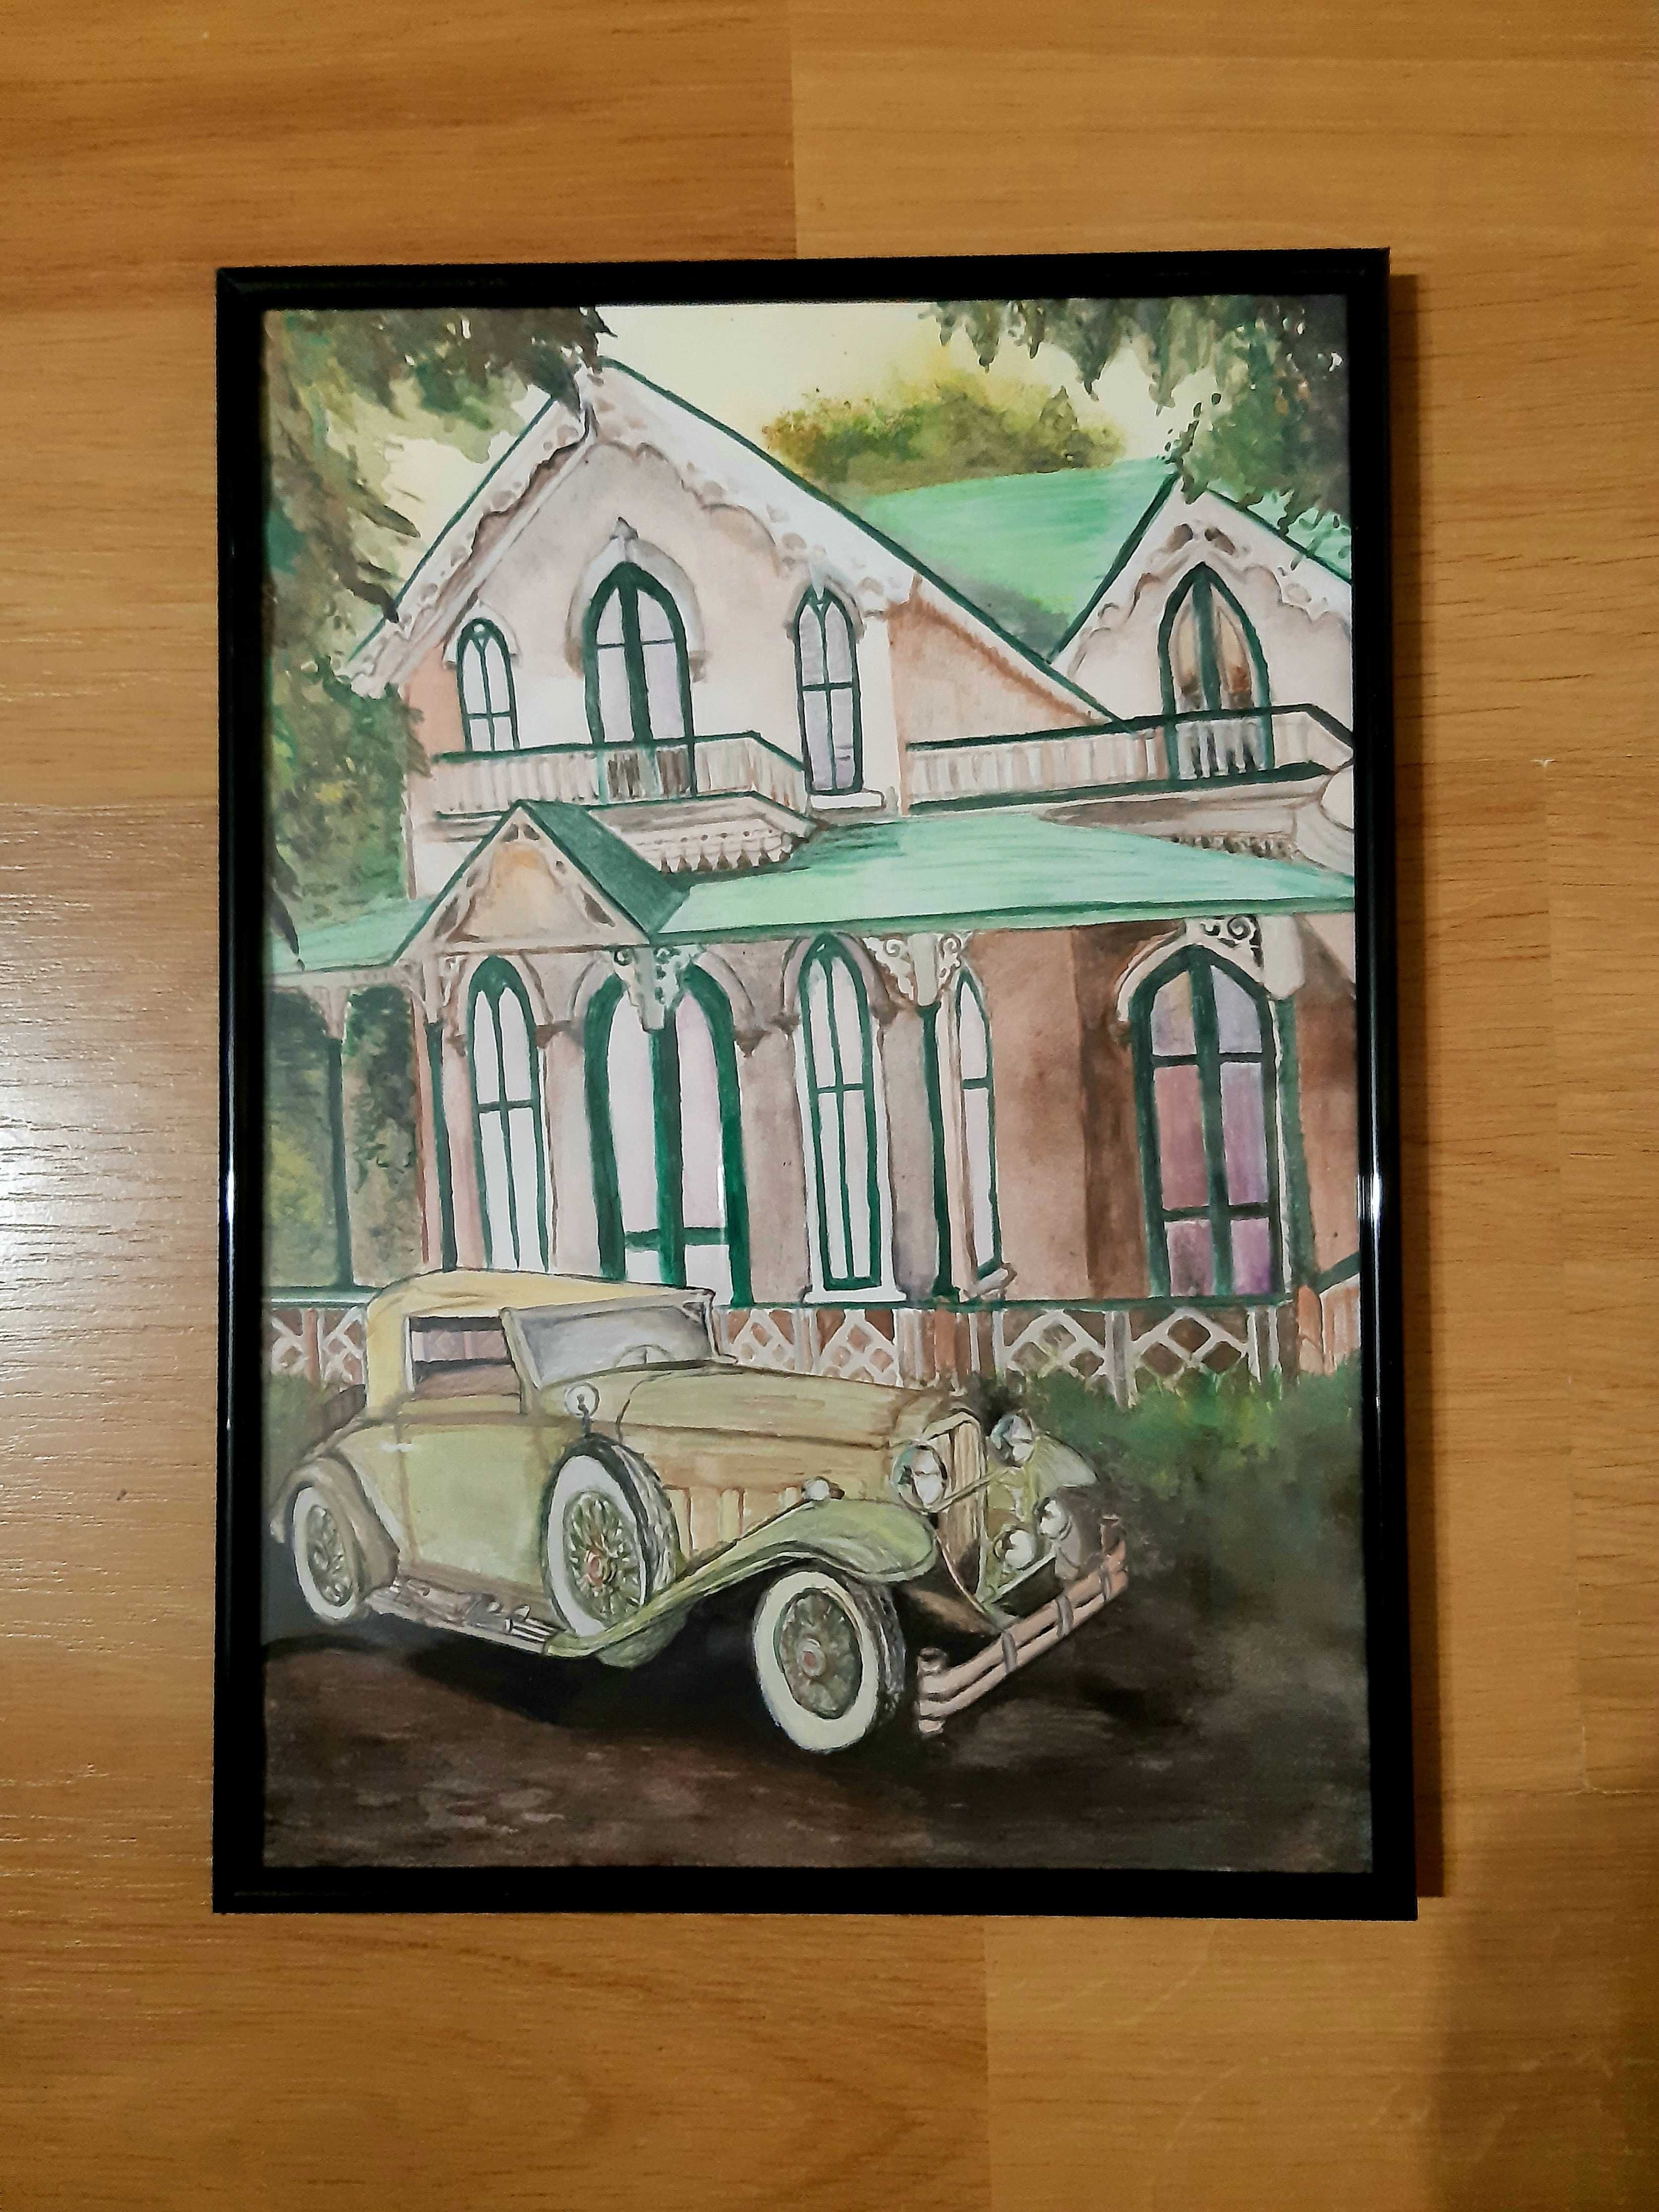 Tablou pictura A4 masina de epoca vintage Sunbeam anii '20